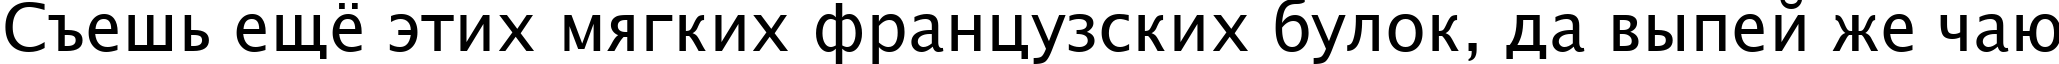 Пример написания шрифтом Lucida Sans Unicode текста на русском